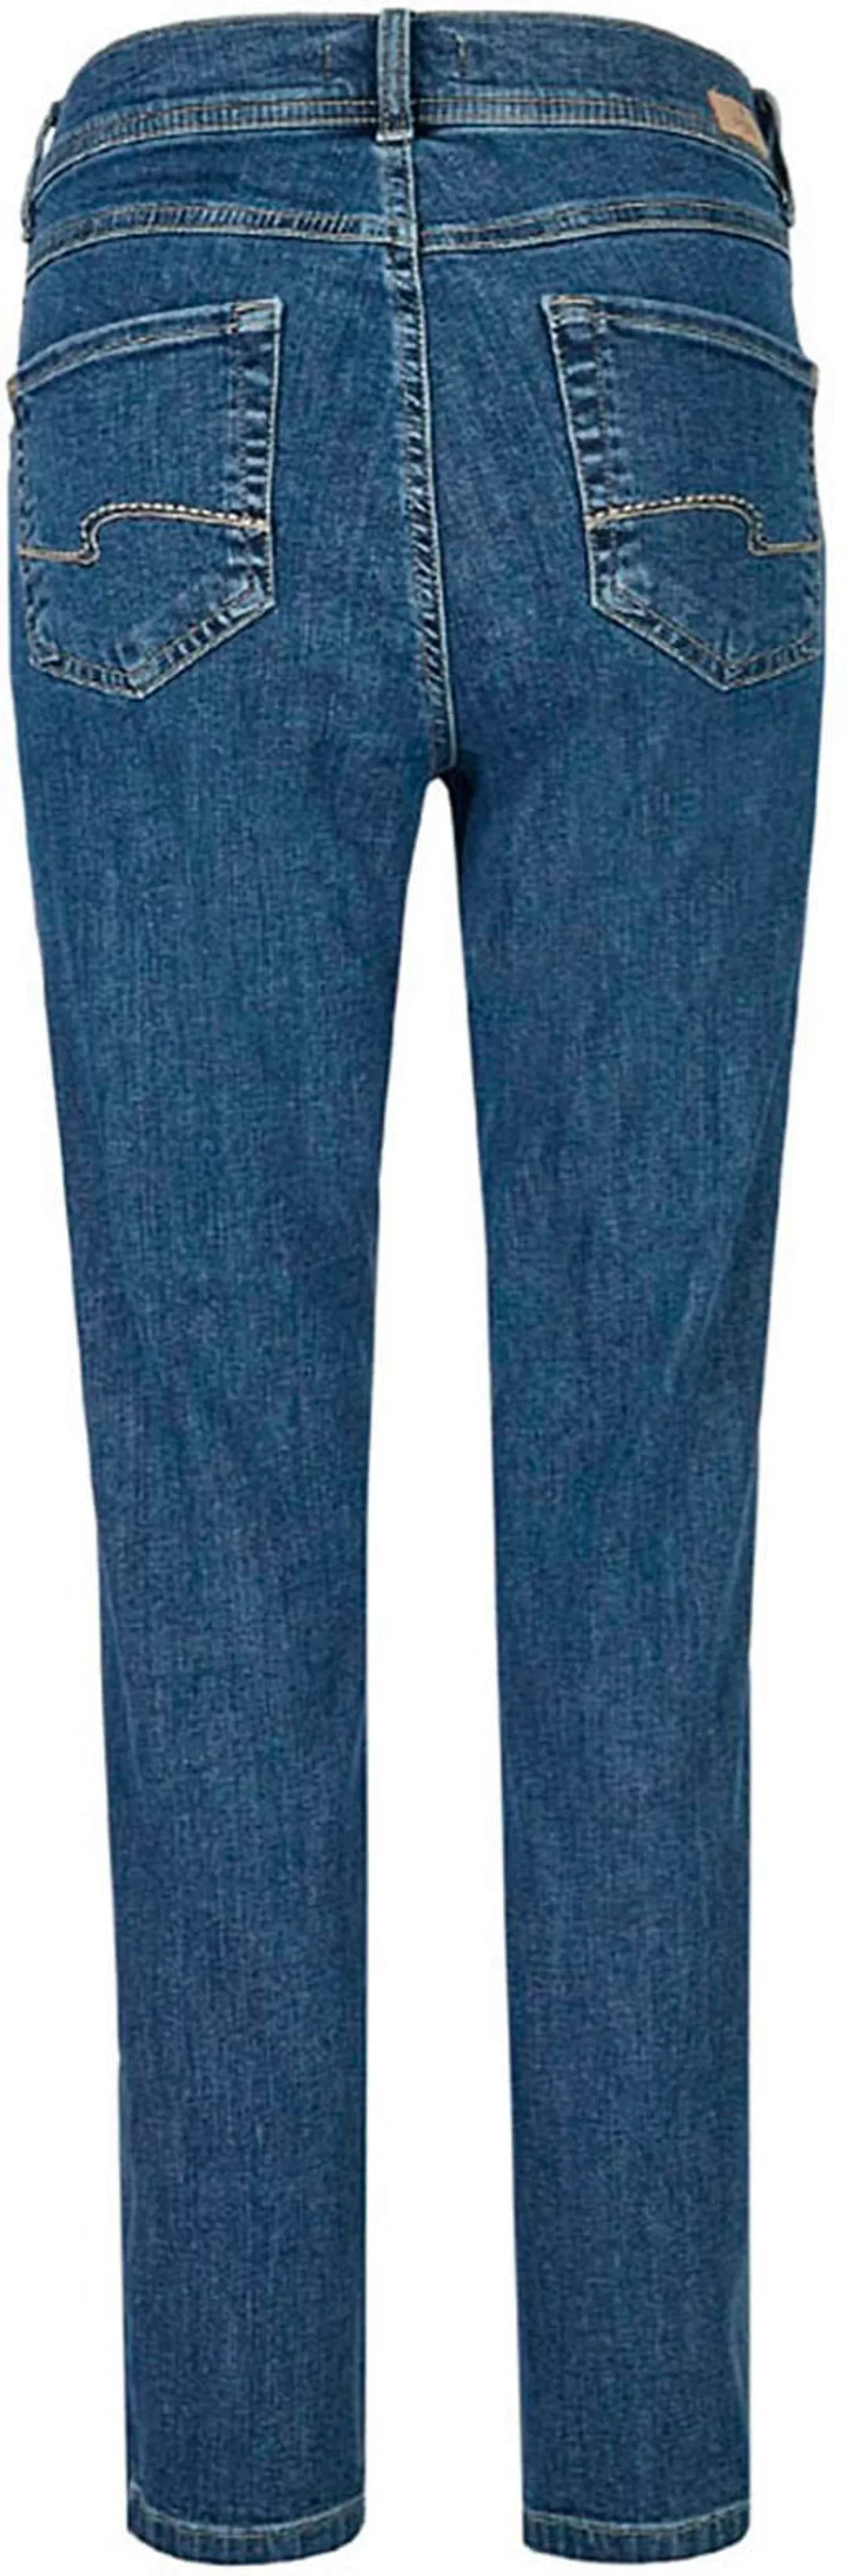 ANGELS Straight-Jeans "ORNELLA" günstig online kaufen